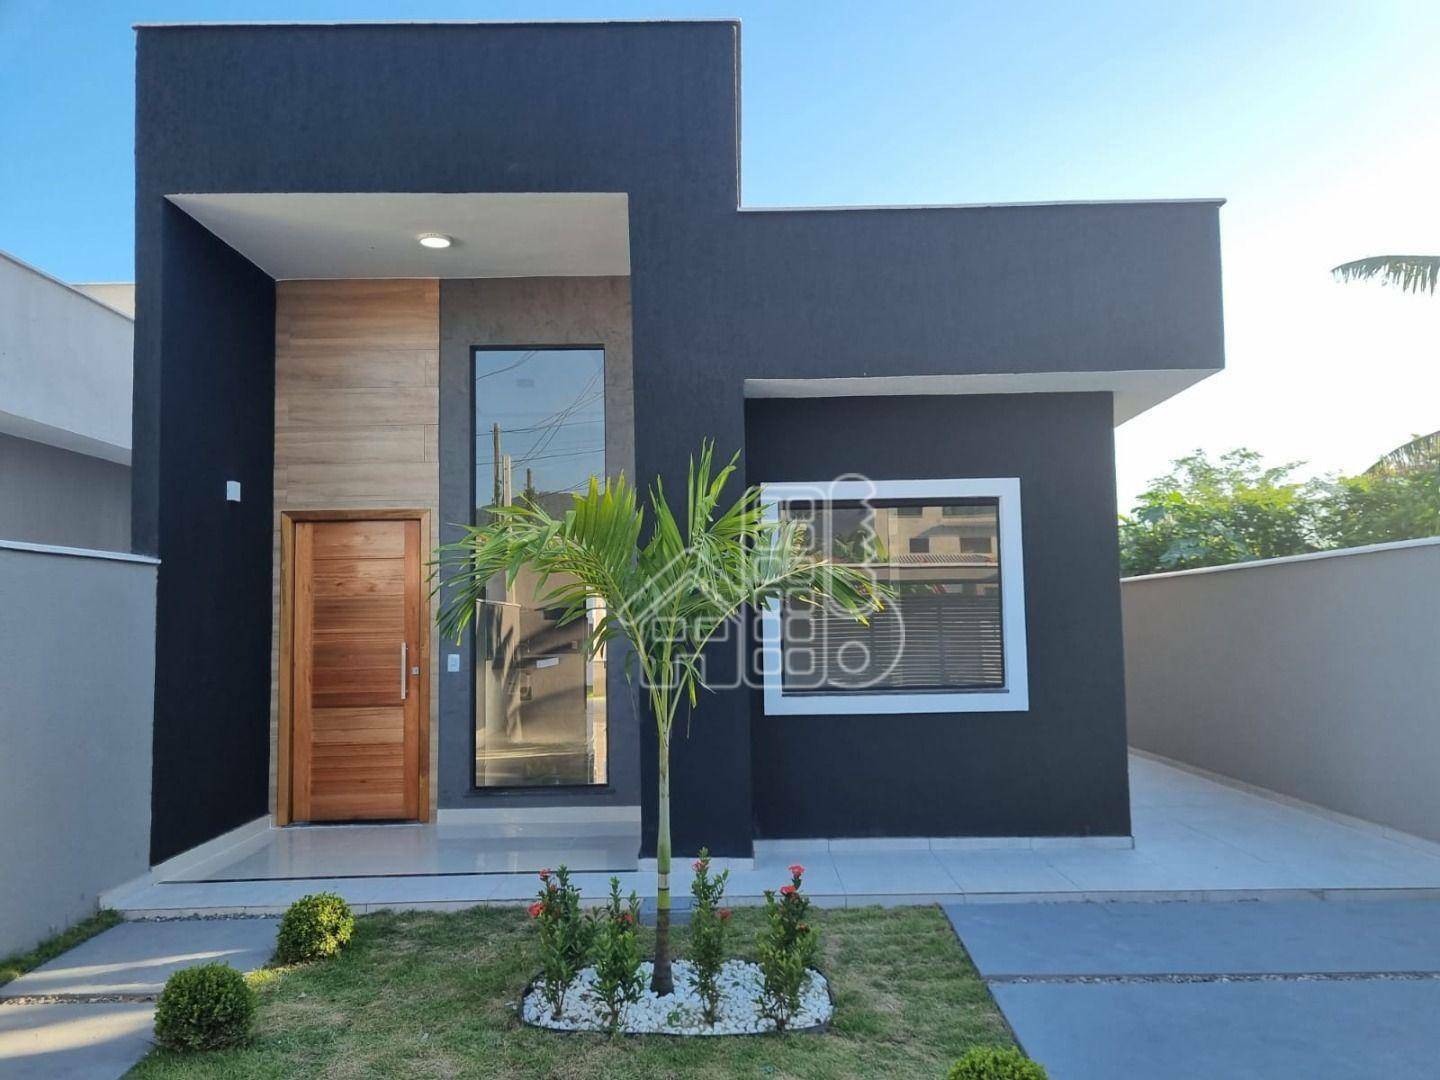 Casa com 2 dormitórios à venda, 86 m² por R$ 550.000,02 - Praia de Itaipuaçu (Itaipuaçu) - Maricá/RJ